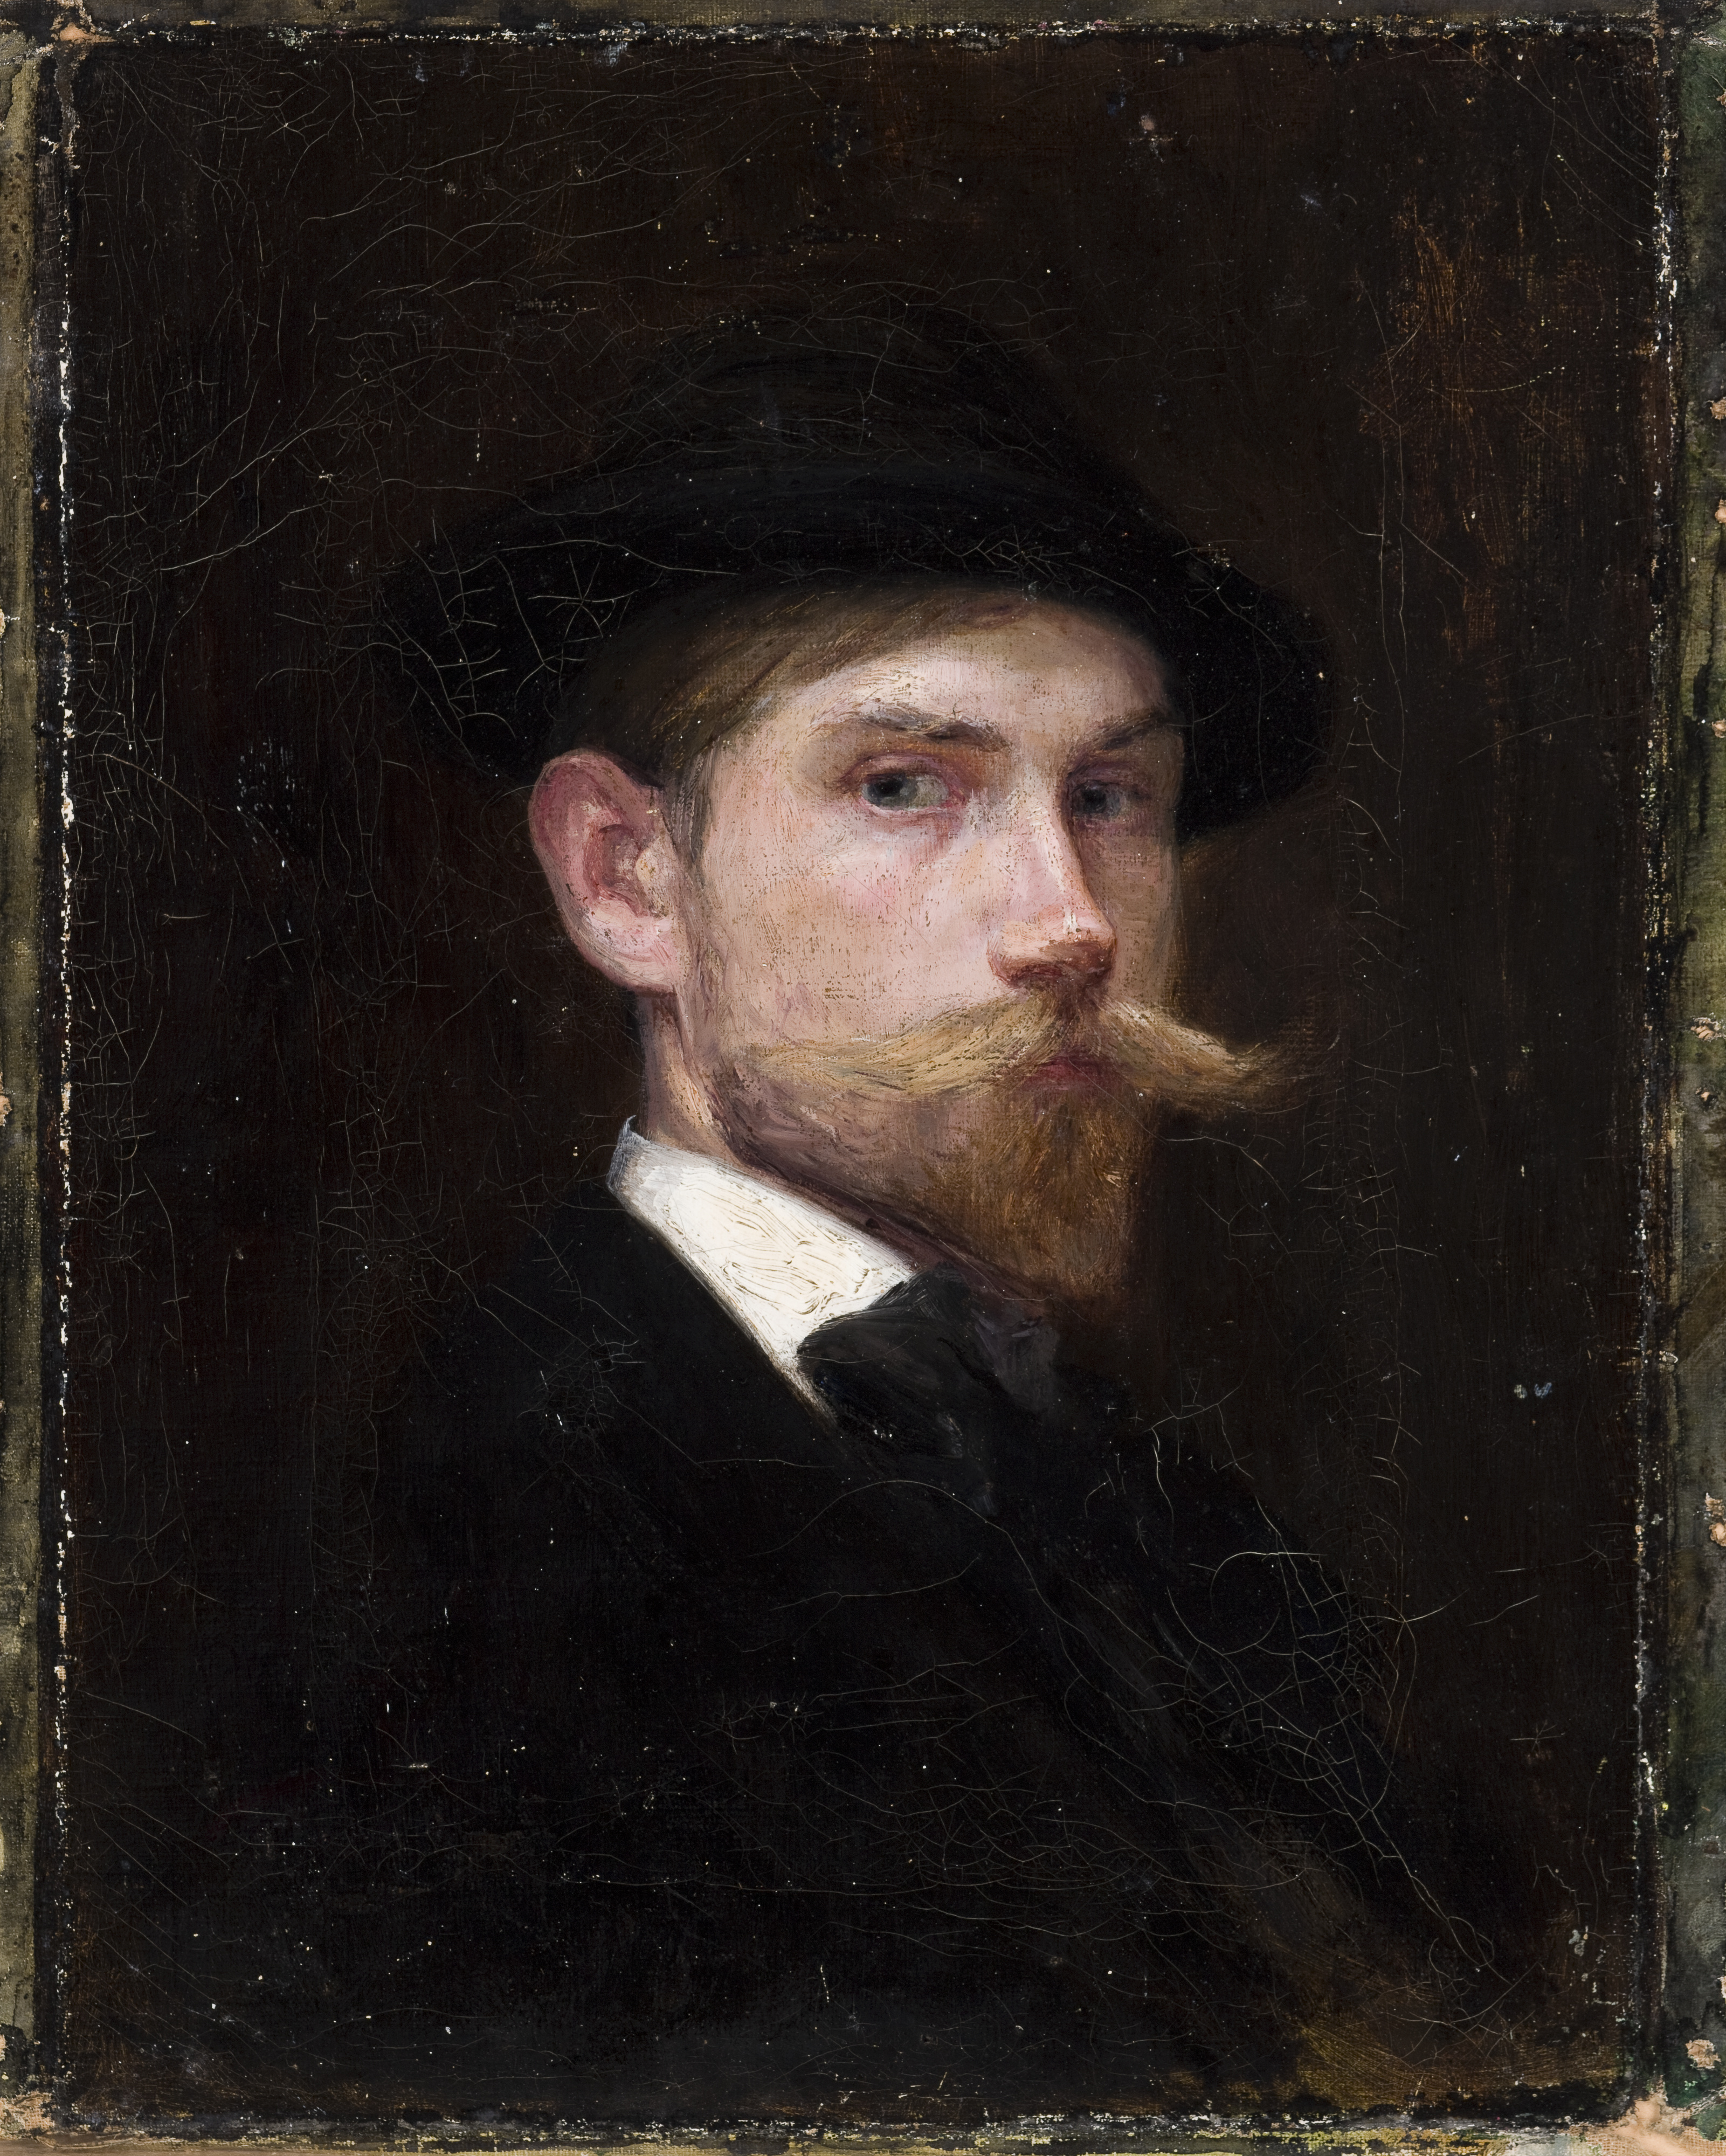 Leon Kowalski (1870-1937), "Autoportret", Paryż 1897 rok, źródło: Muzeum Narodowe Kraków